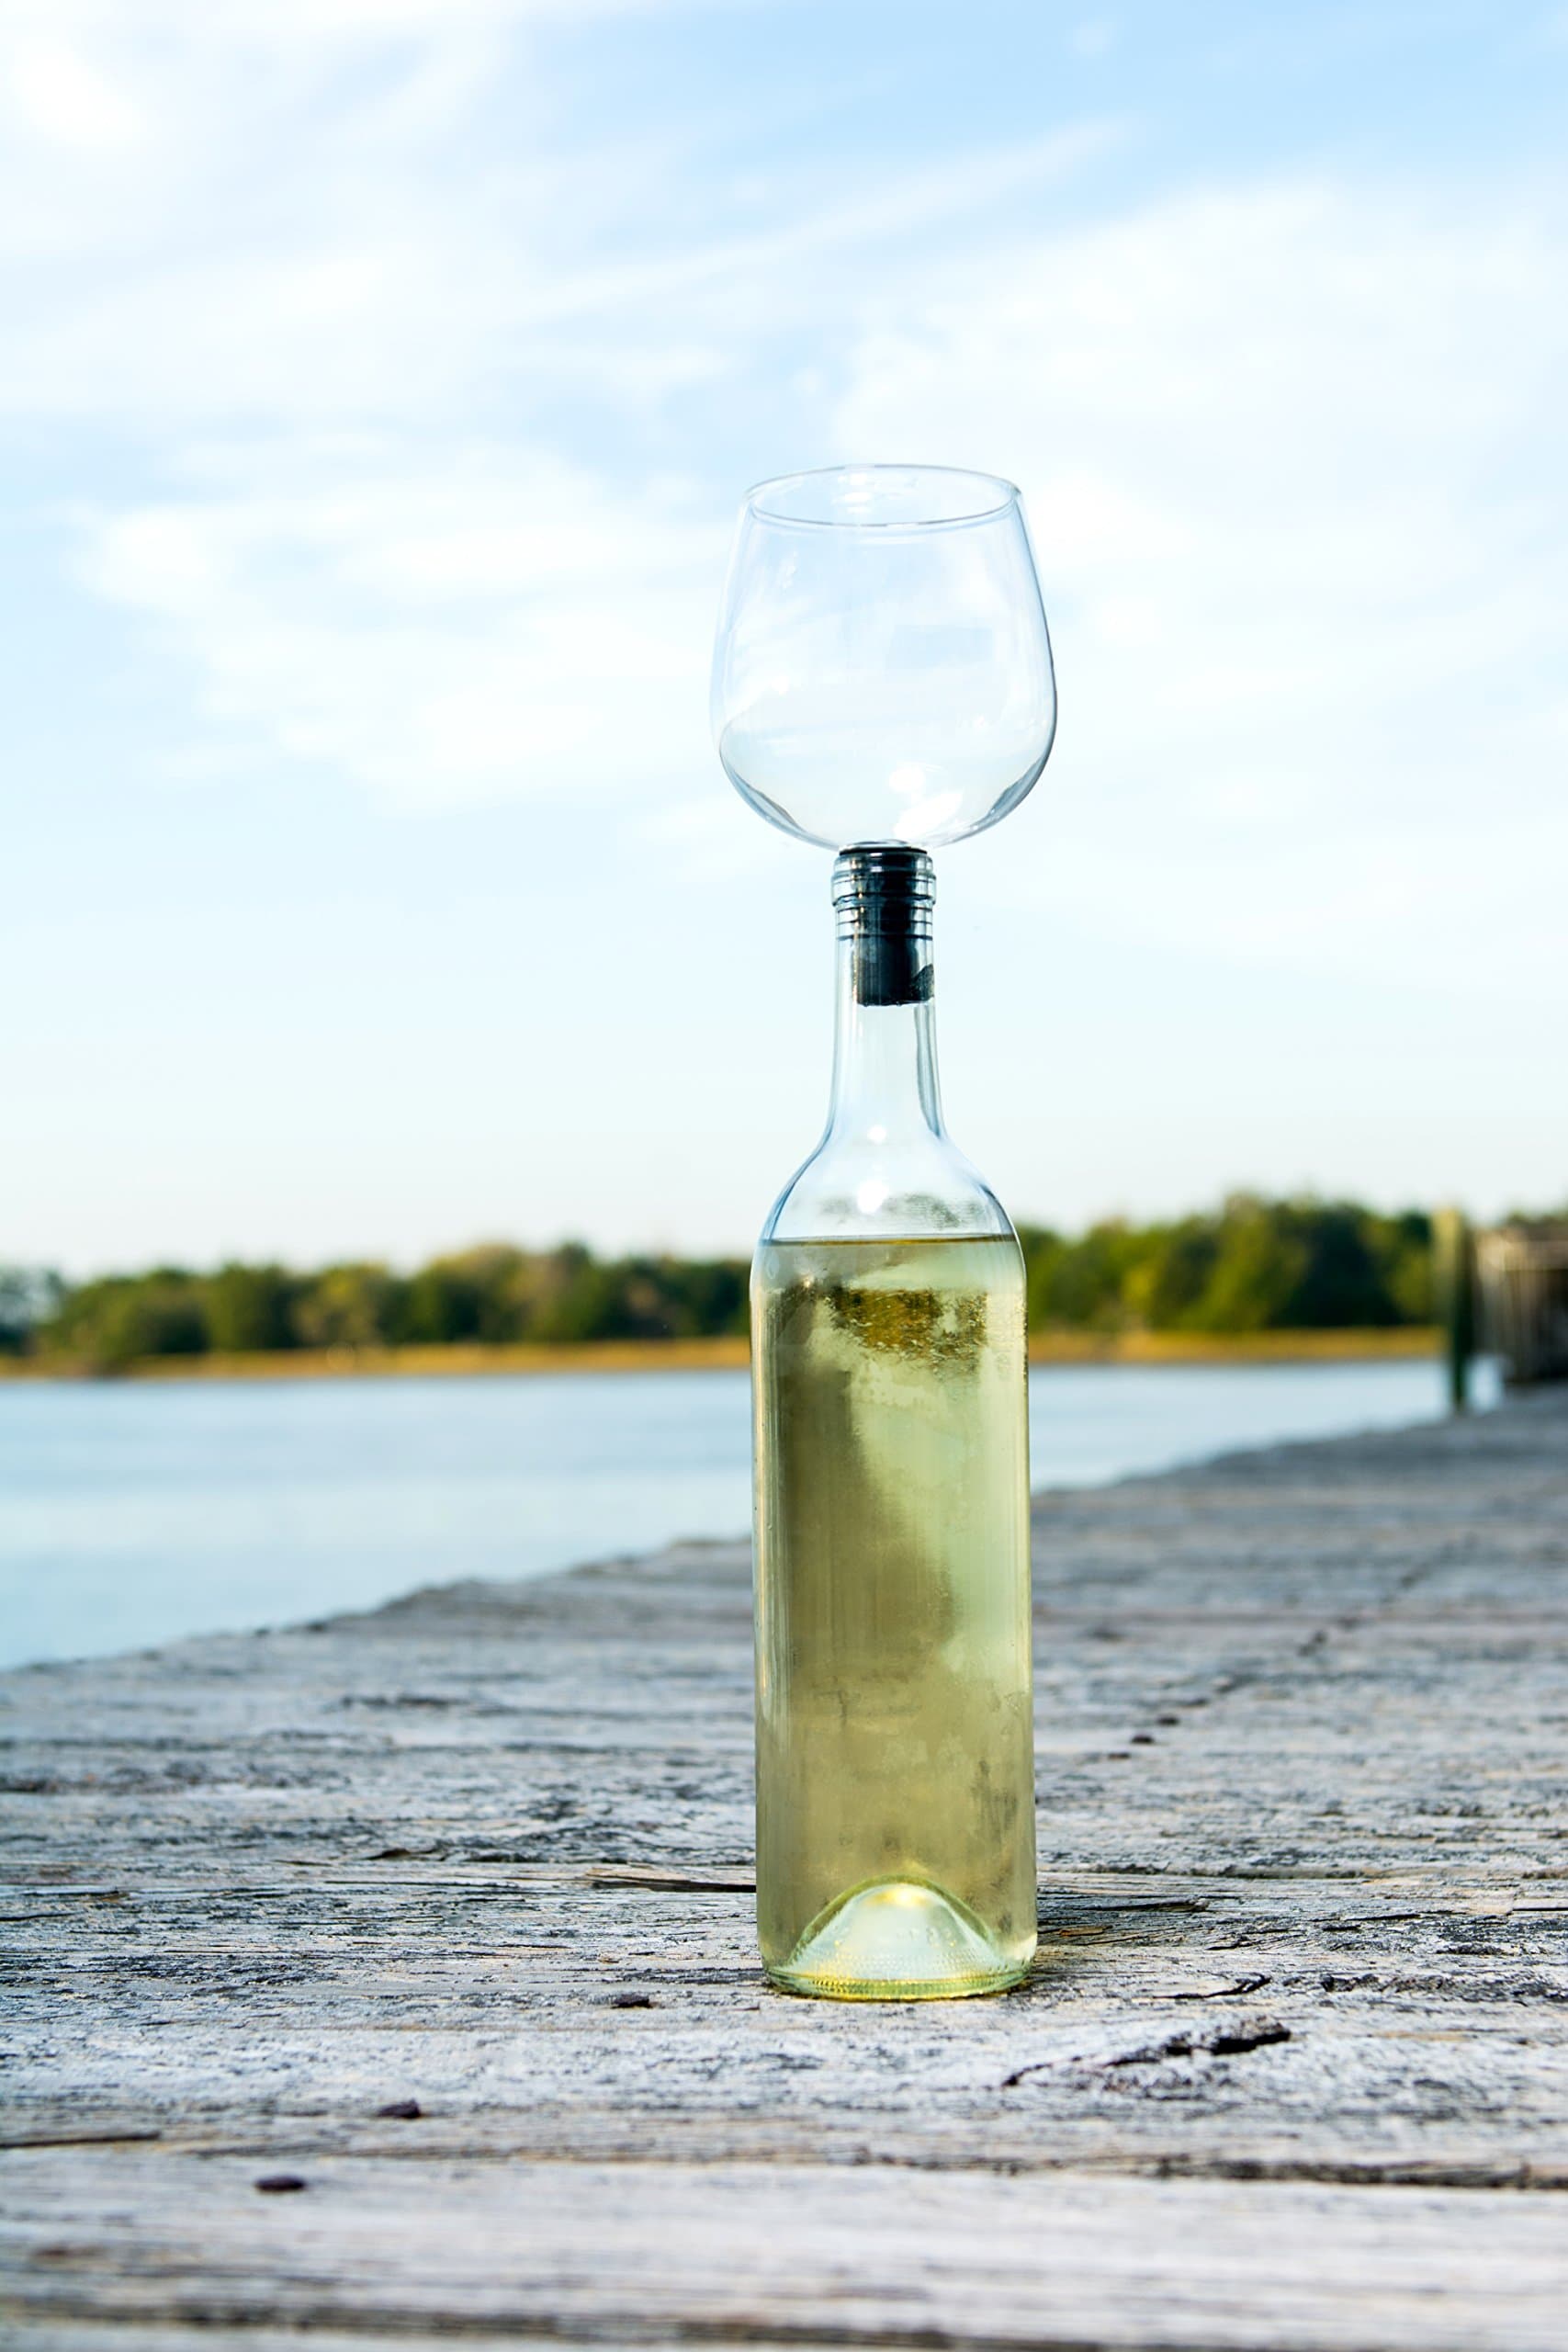 wine bottle glass